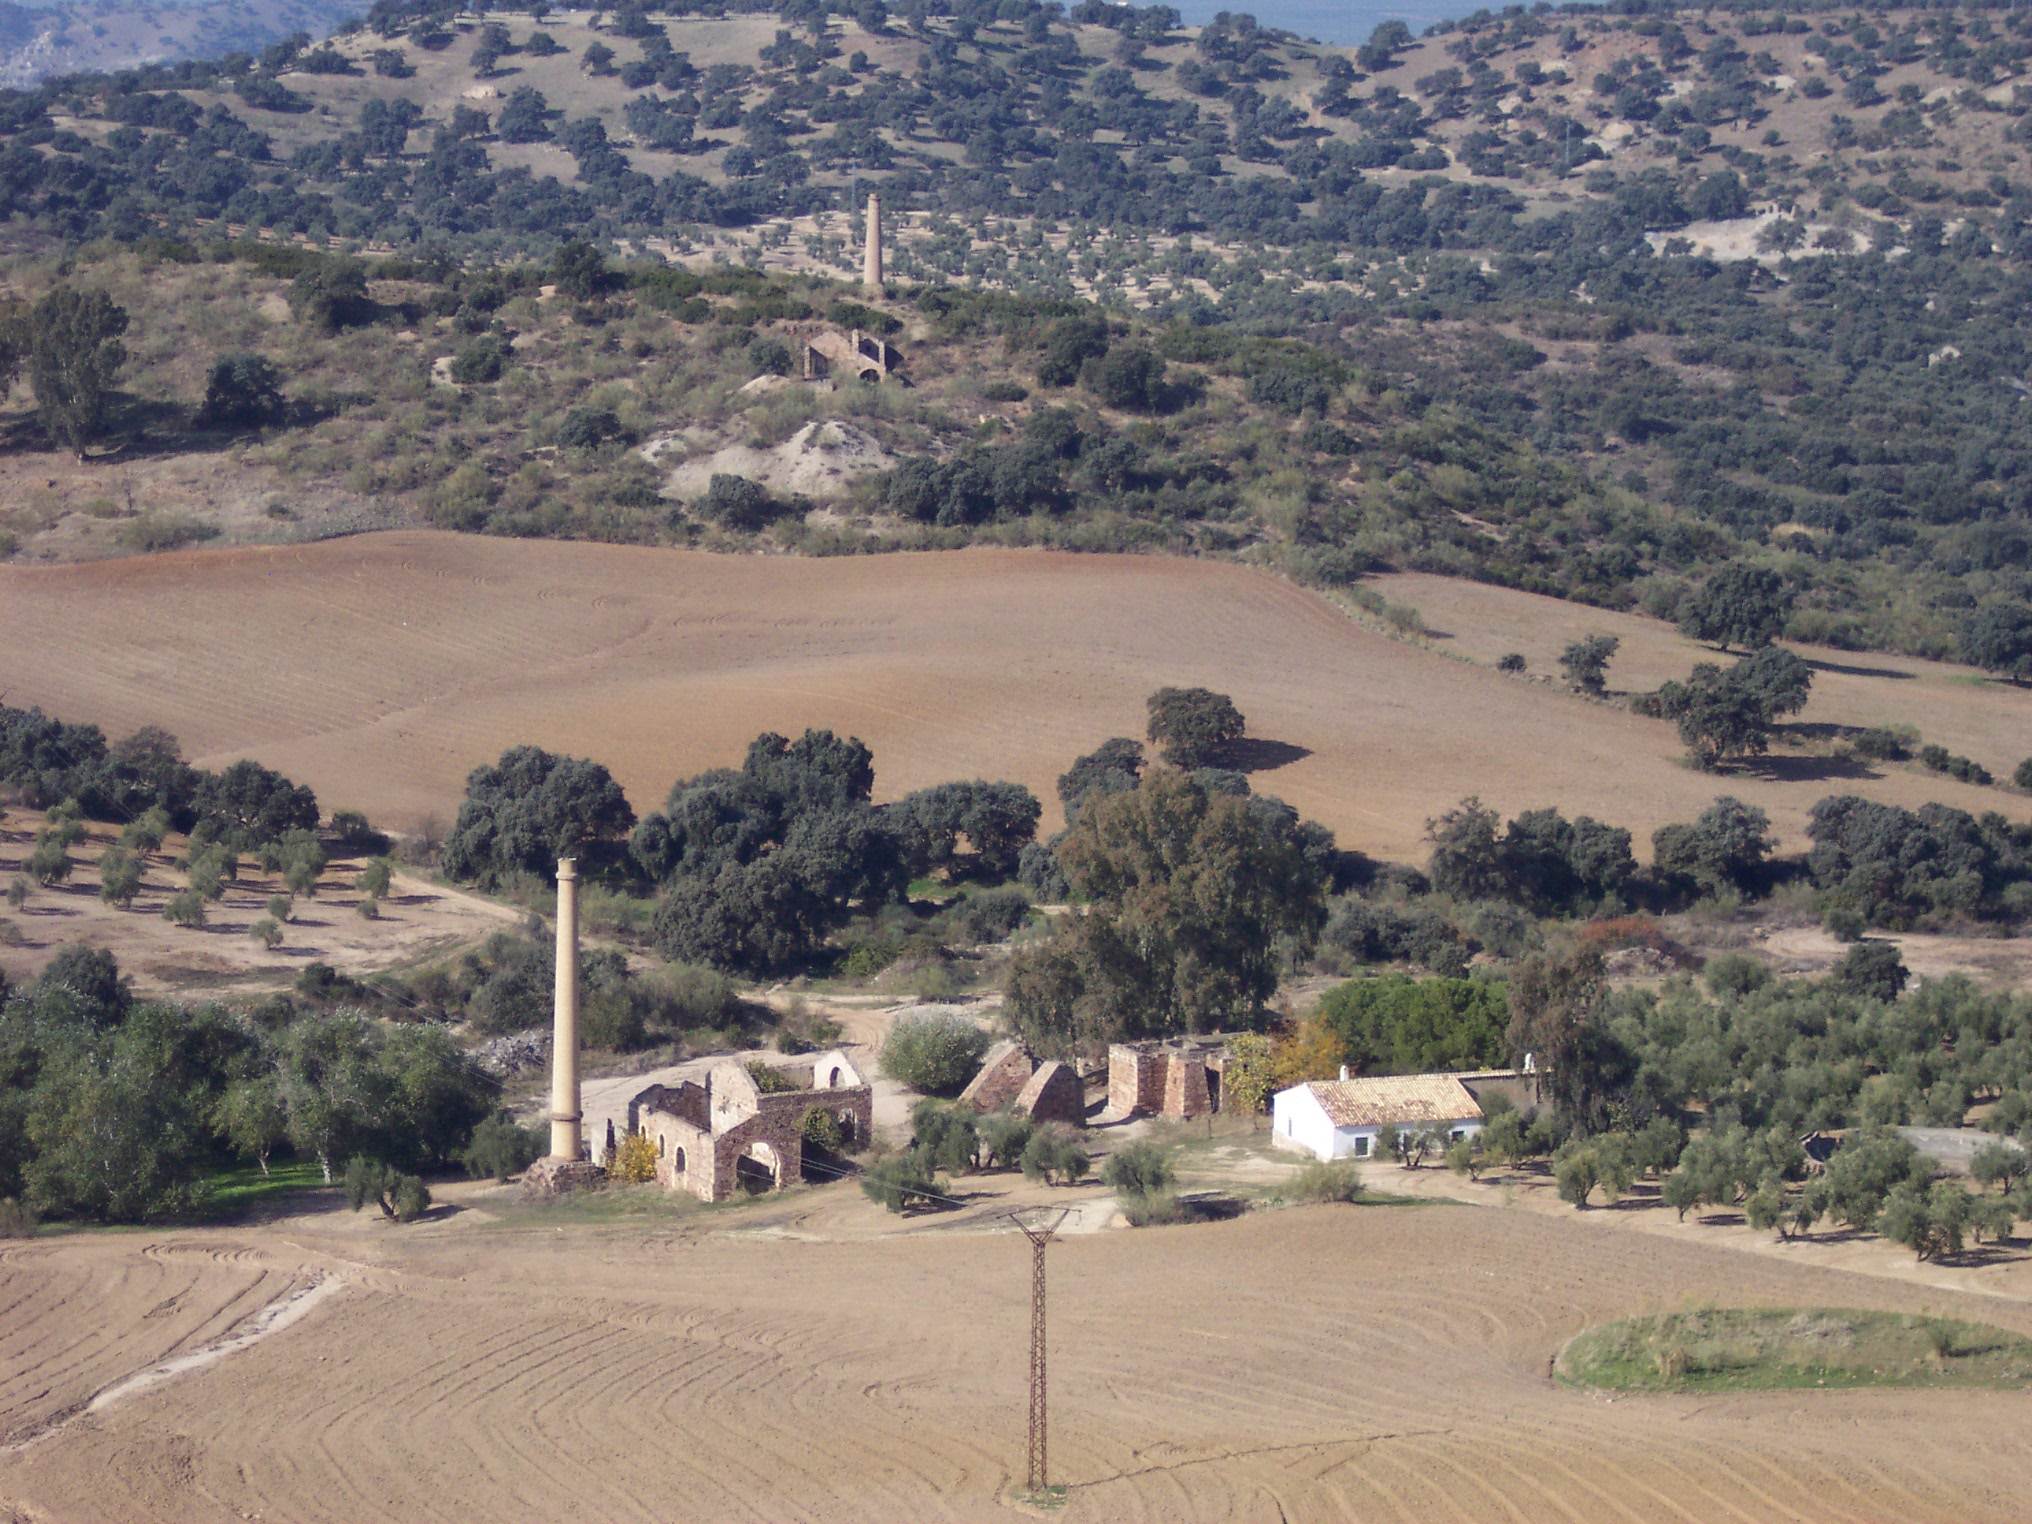 Sendero de La Garza y Pozo de San Pascual. Rutas Mineras de Linares – PR-A 262